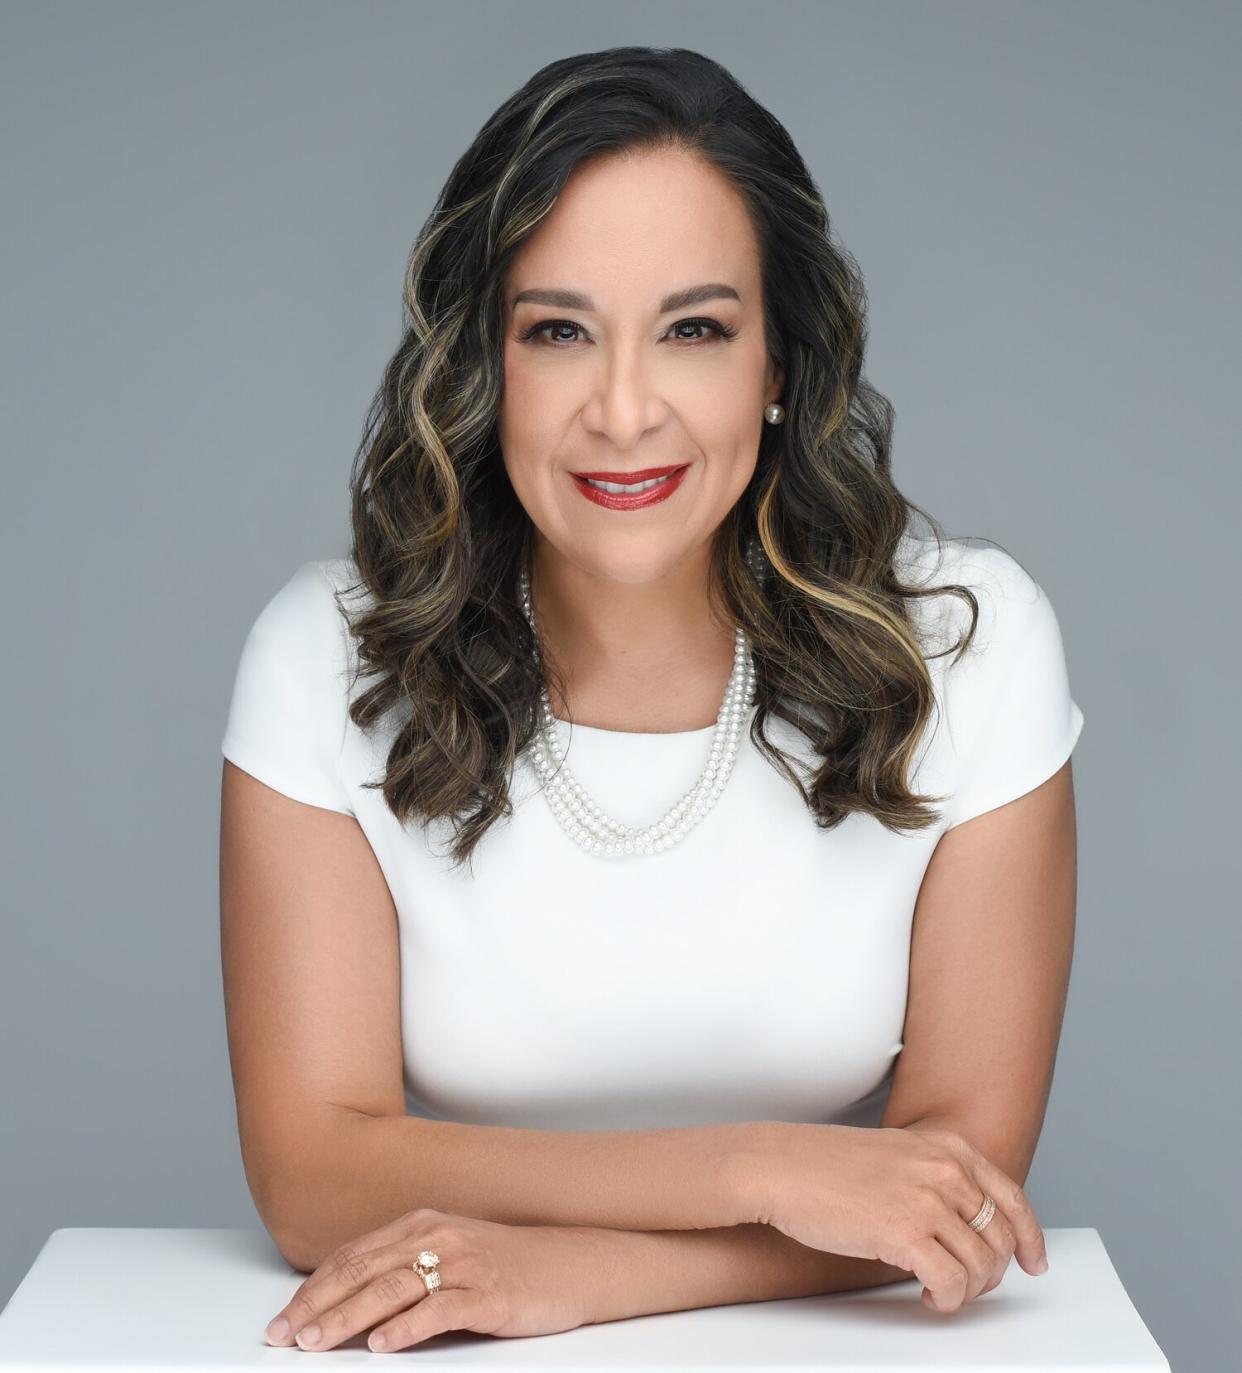 Monica De La Cruz